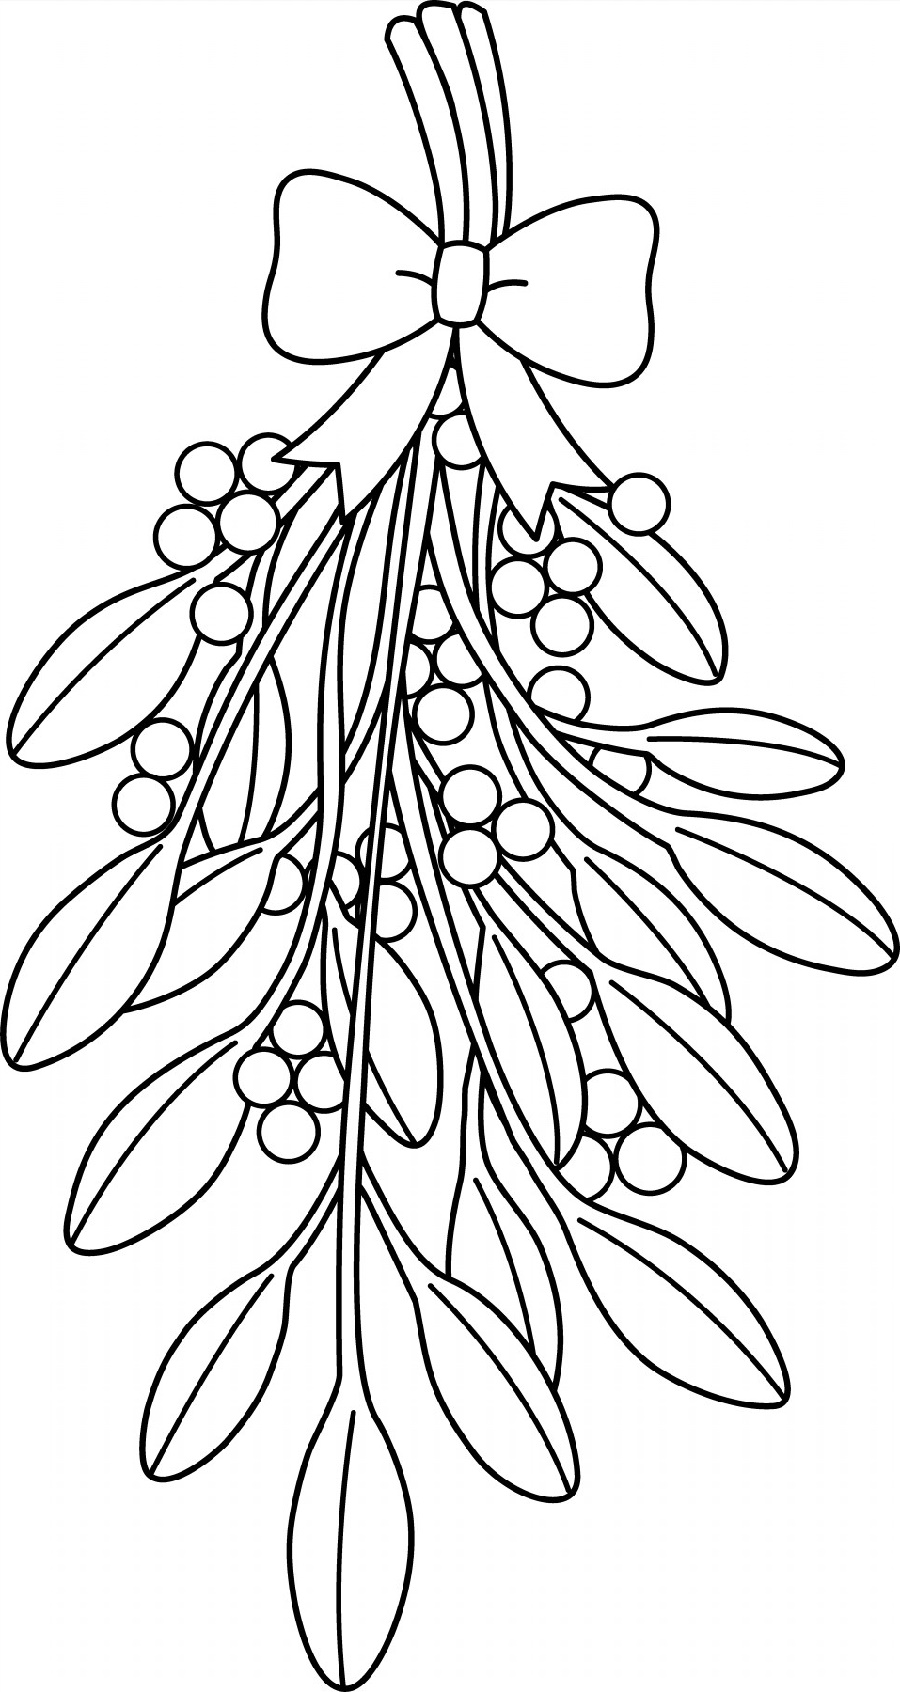 Mistletoe Coloring Pages Line Art